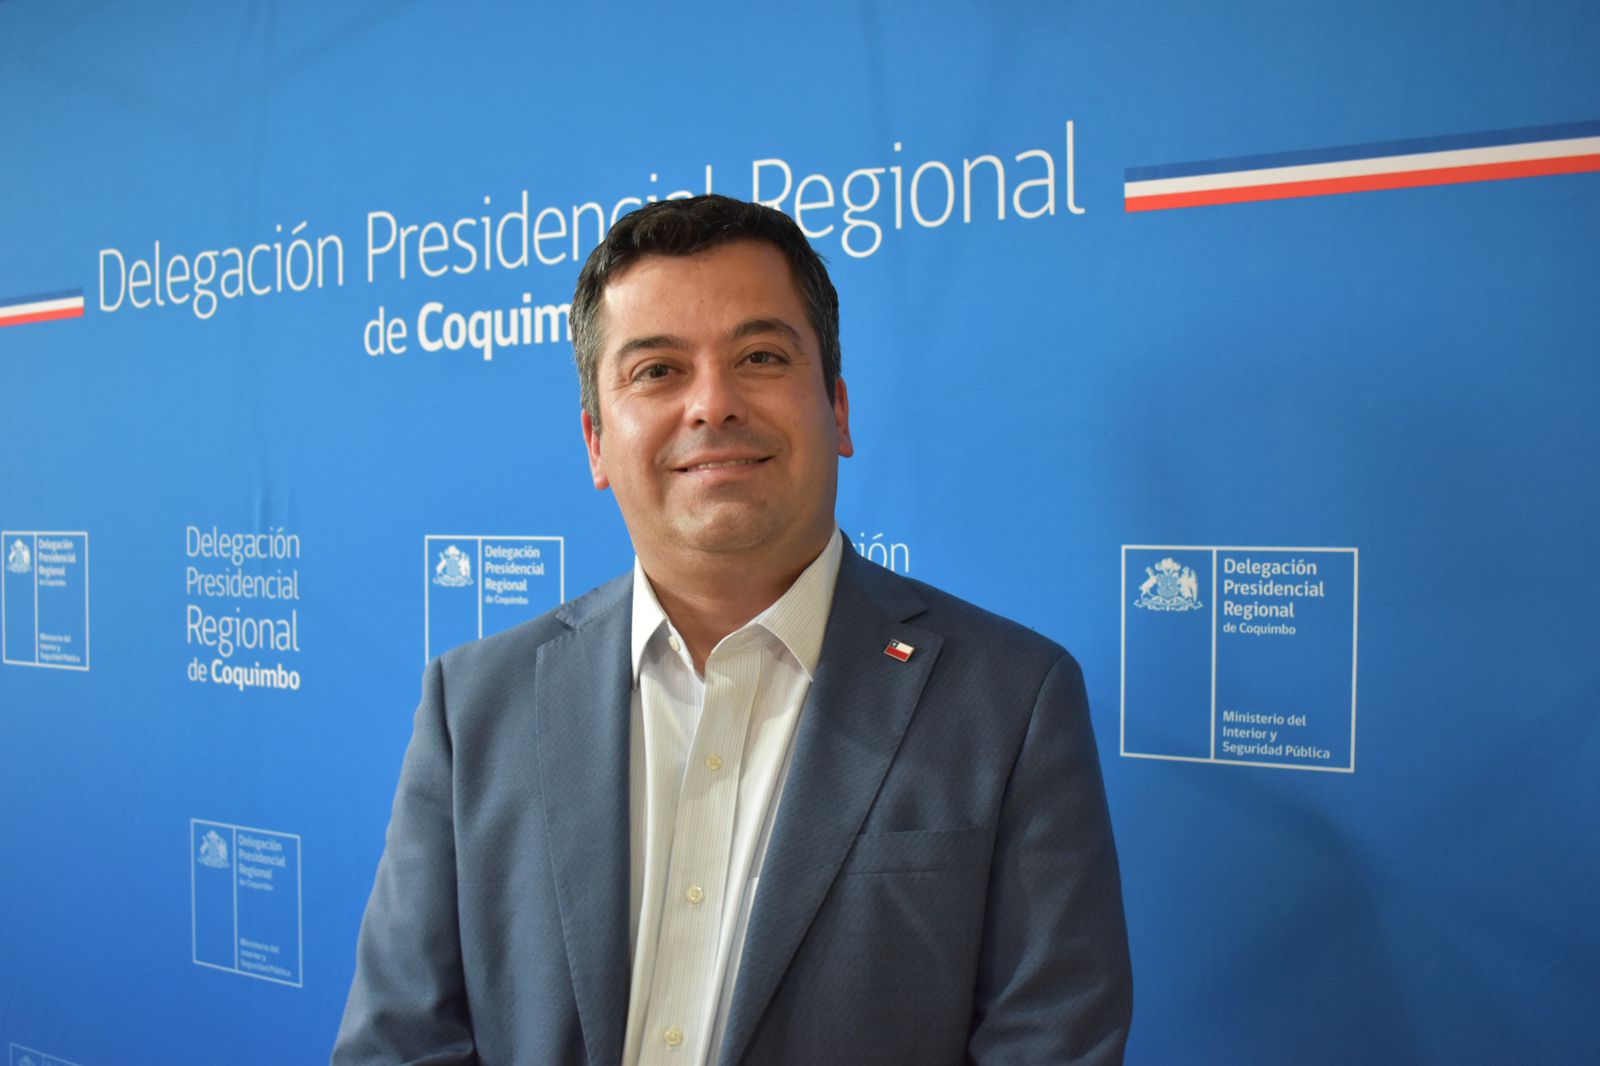 Ignacio Pinto Retamal asume como Delegado Presidencial Regional de Coquimbo